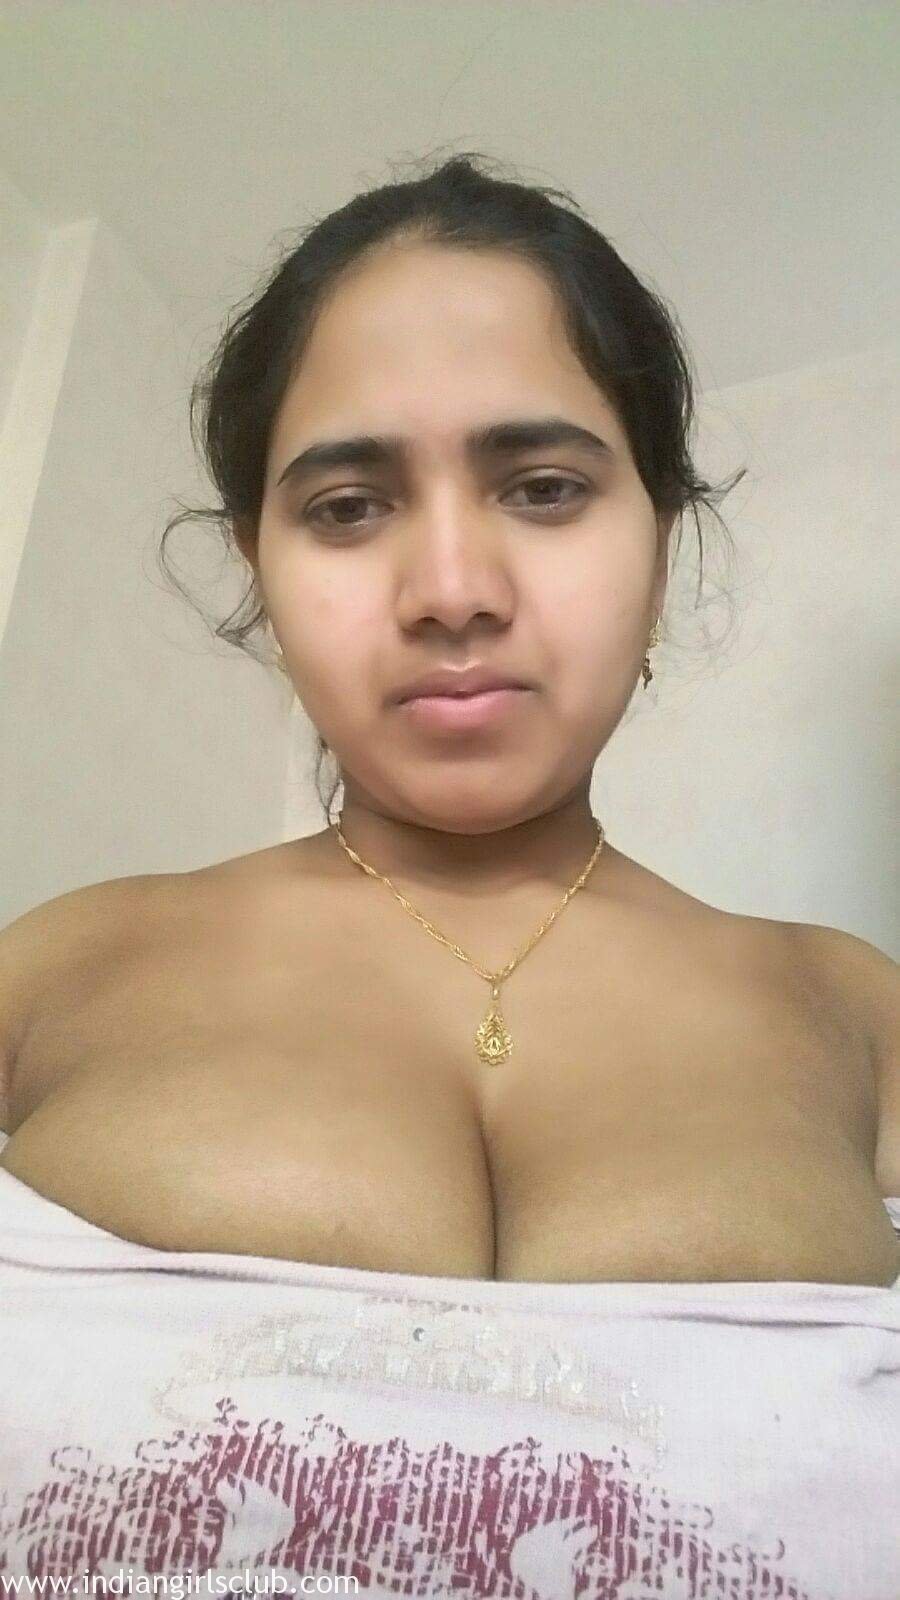 Chubby Hot Indian GF Girl Saira Nude Photos